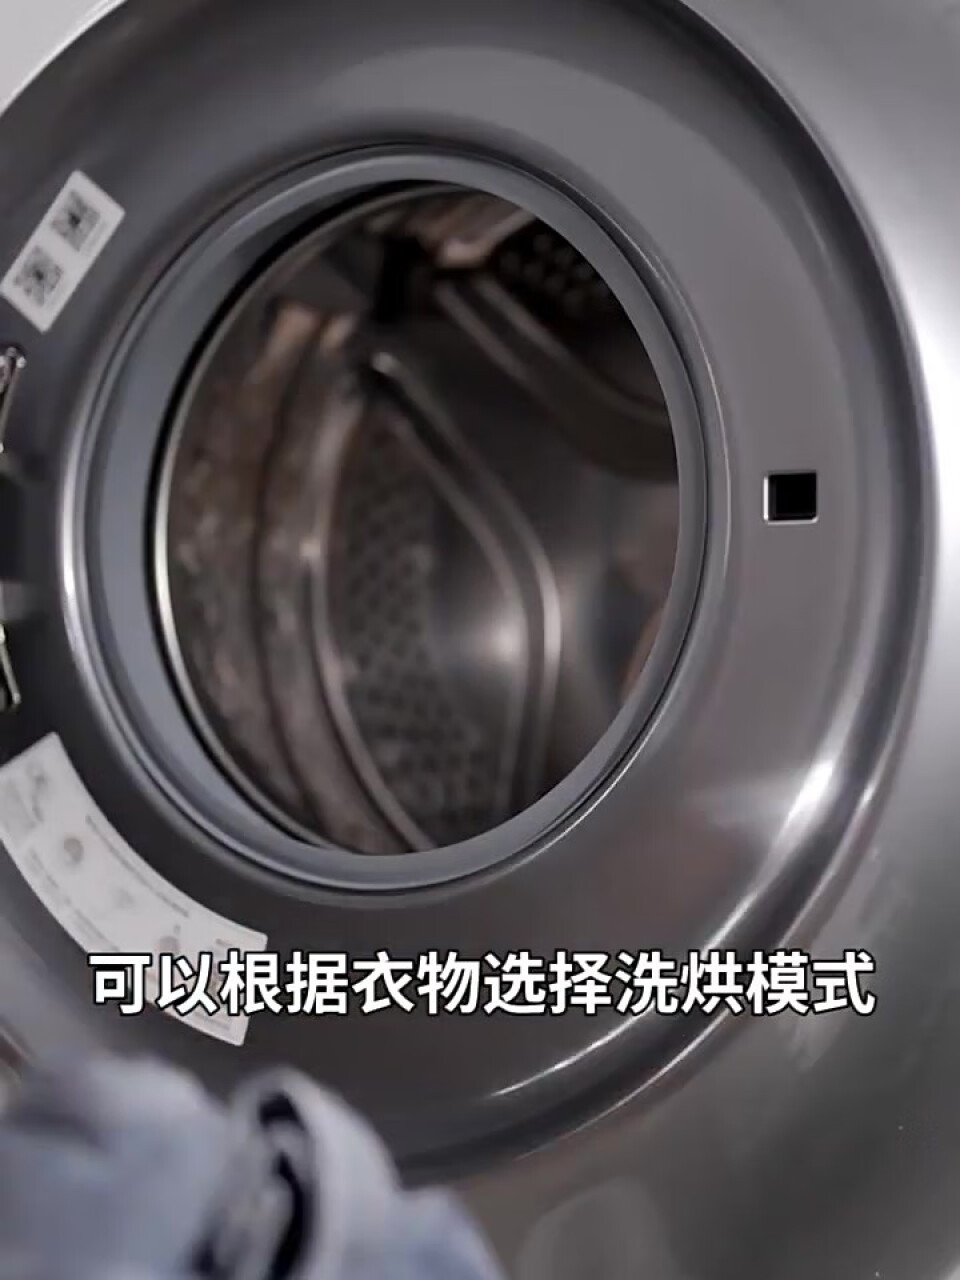 小吉(MINIJ)智能壁挂洗衣机迷你母婴全自动DD变频直驱洗烘一体机 2.5kg|22种程序|彩膜触控|V4-XTY(小吉minij说明书),第5张